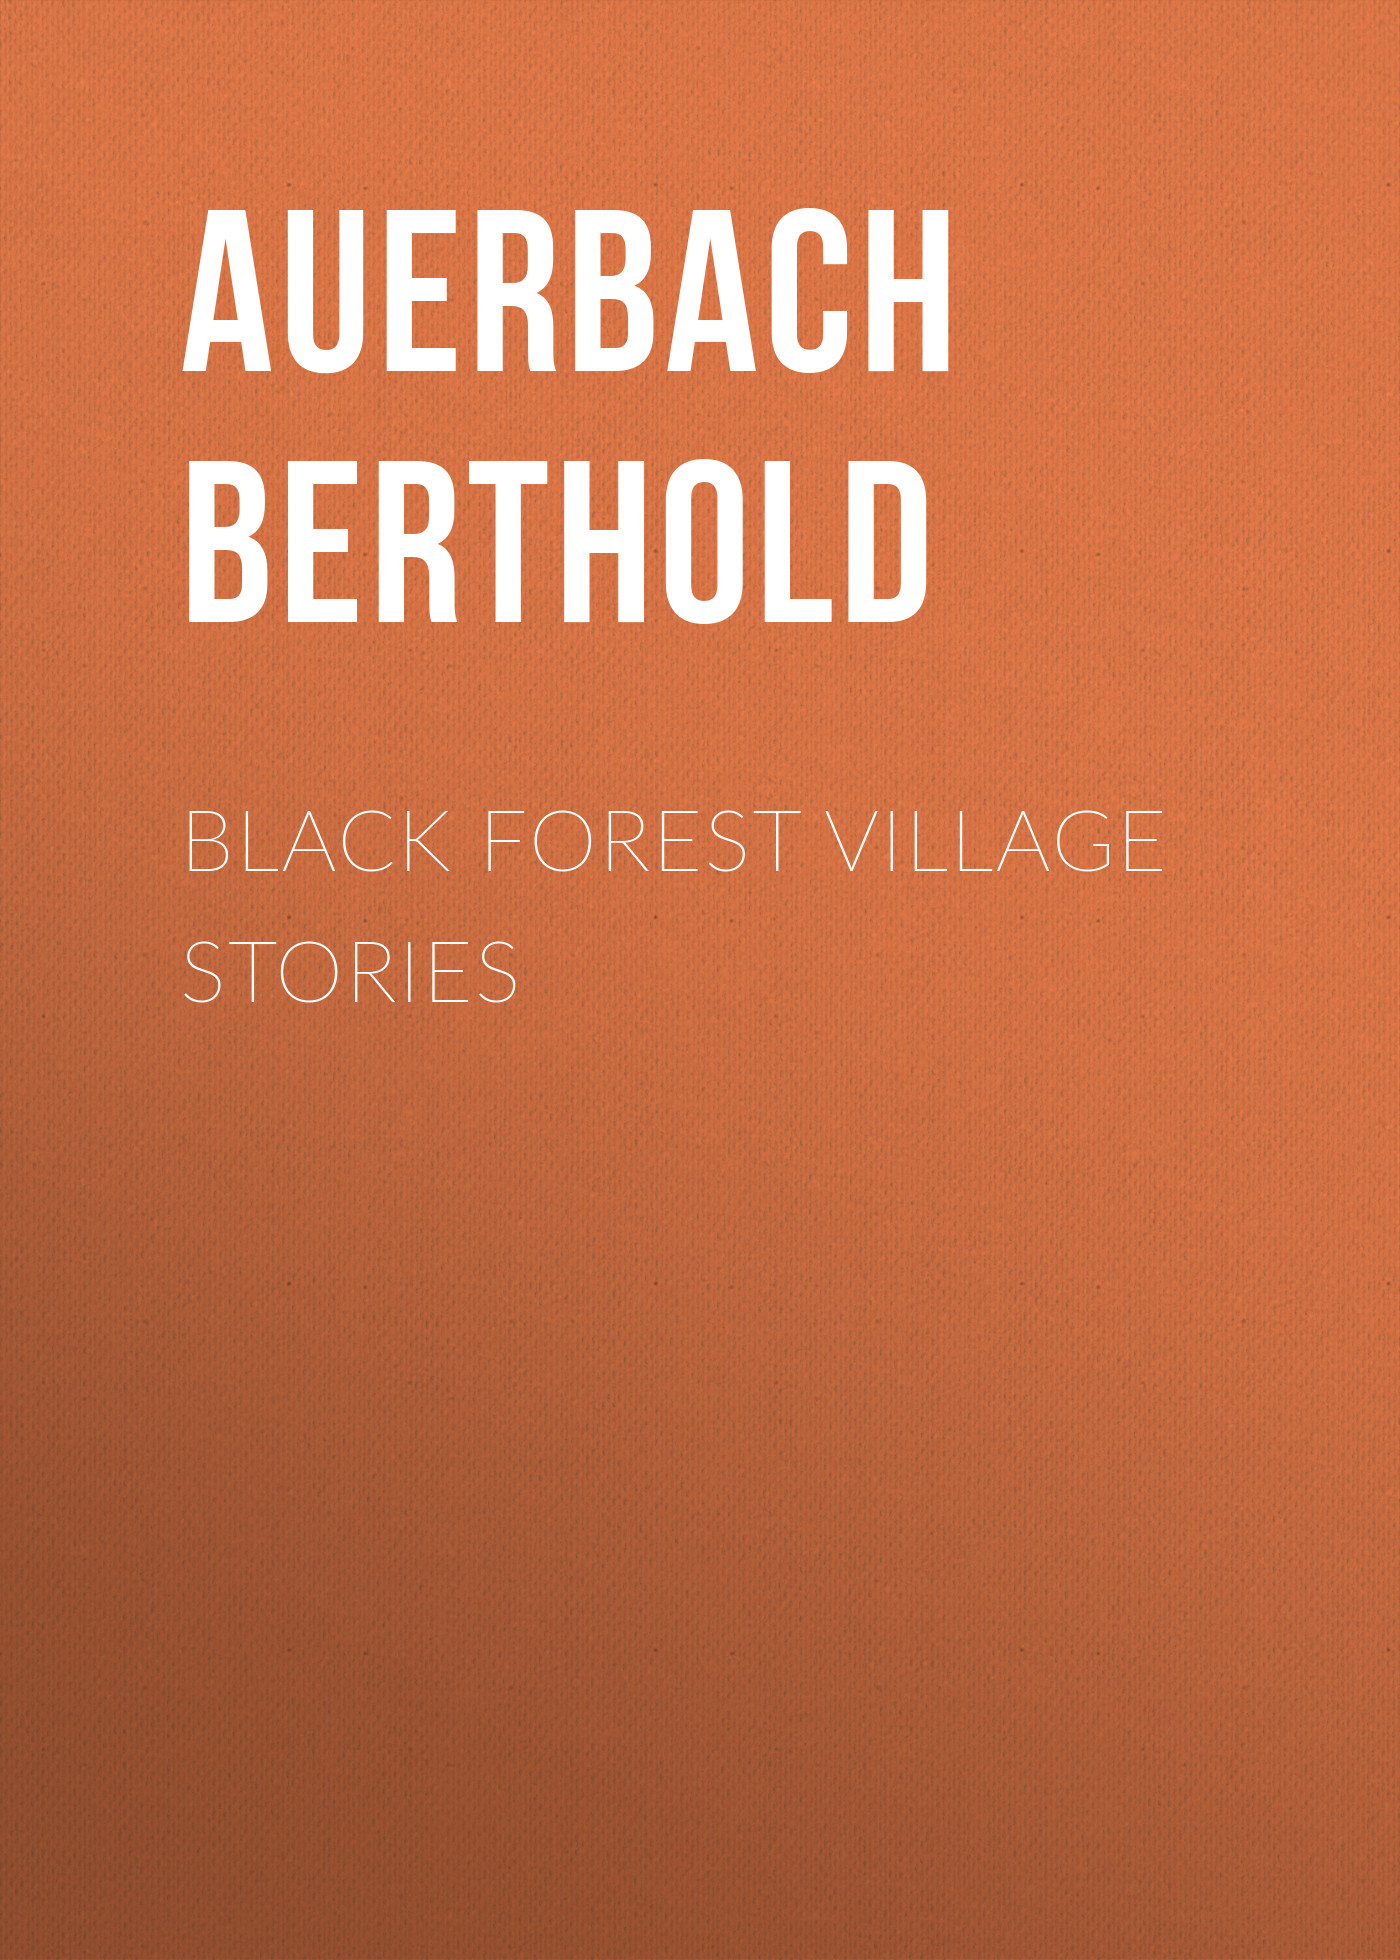 Книга Black Forest Village Stories из серии , созданная Berthold Auerbach, может относится к жанру Зарубежная старинная литература, Зарубежная классика. Стоимость электронной книги Black Forest Village Stories с идентификатором 24171148 составляет 0 руб.